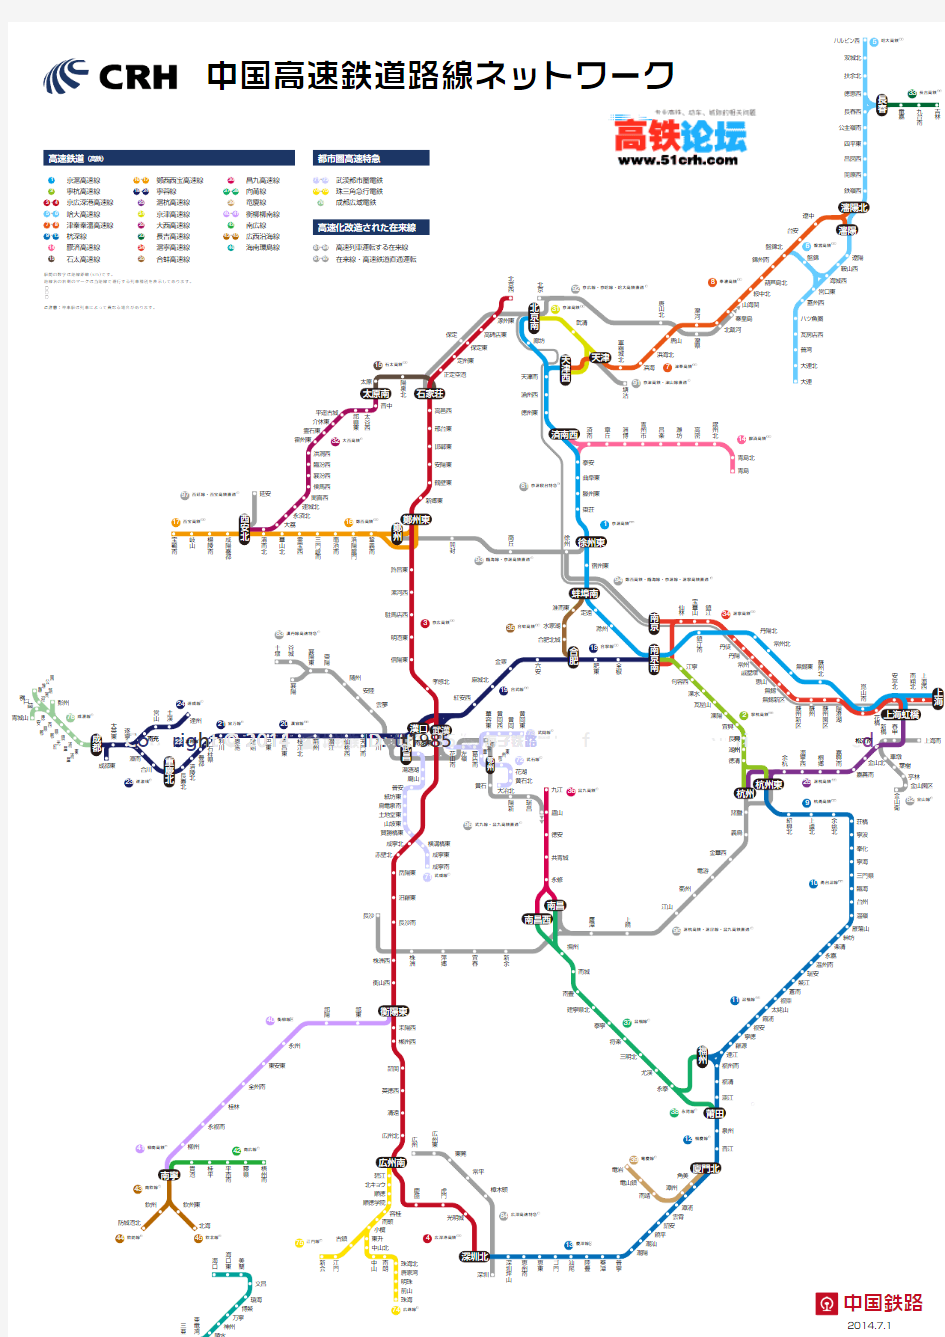 中国高速鉄道路线ネットワーク-201407日语版